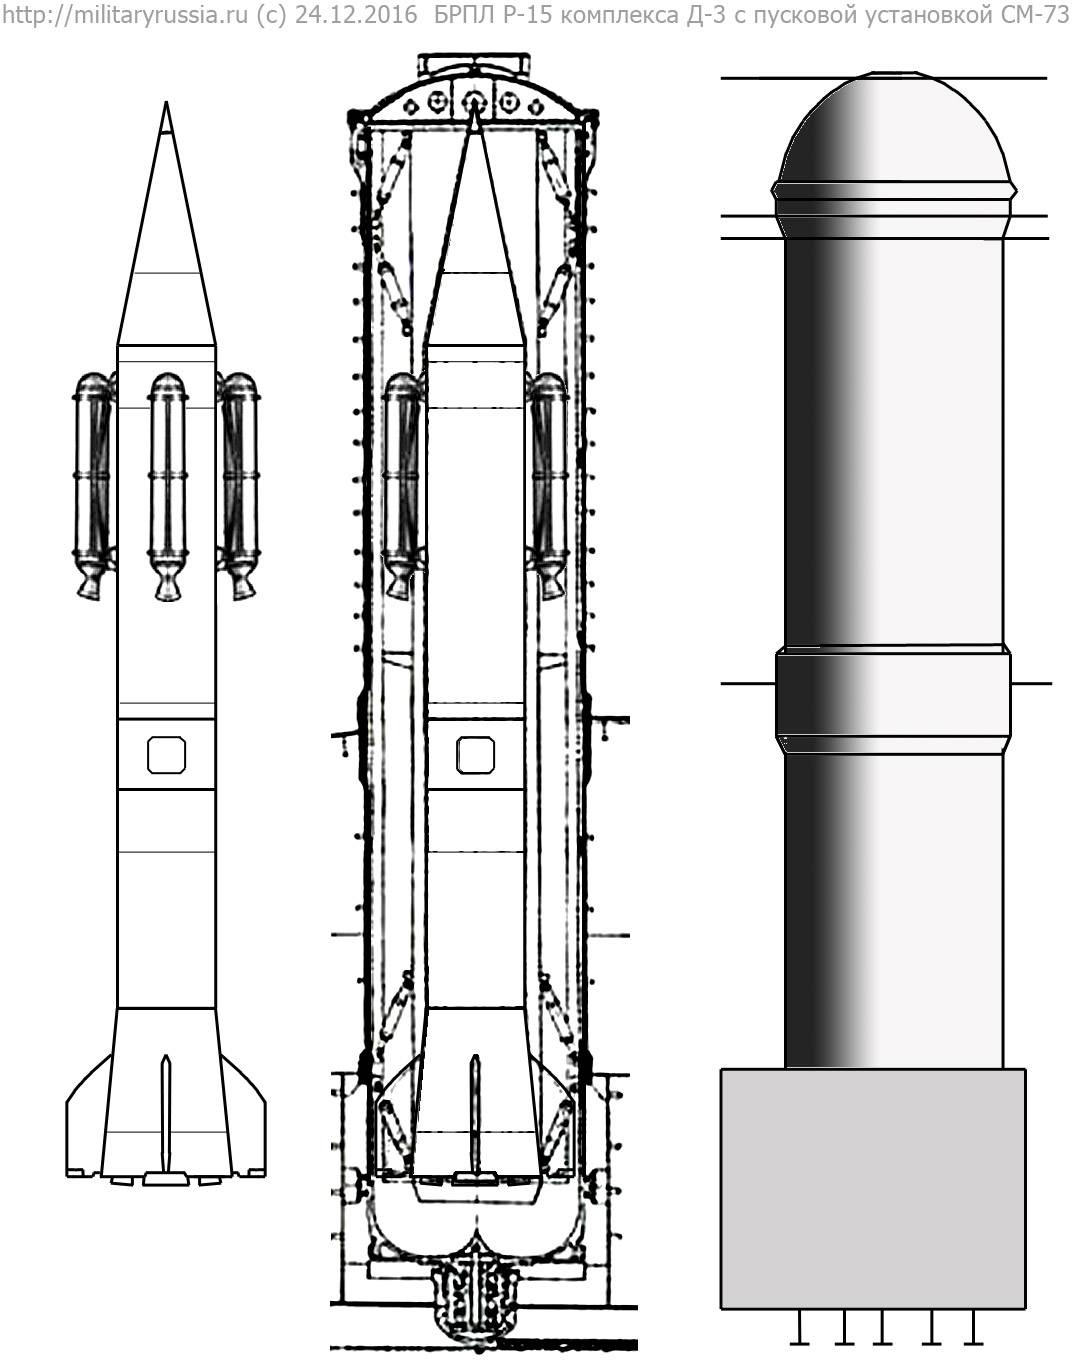 Д-3 – Р-15 (проект)